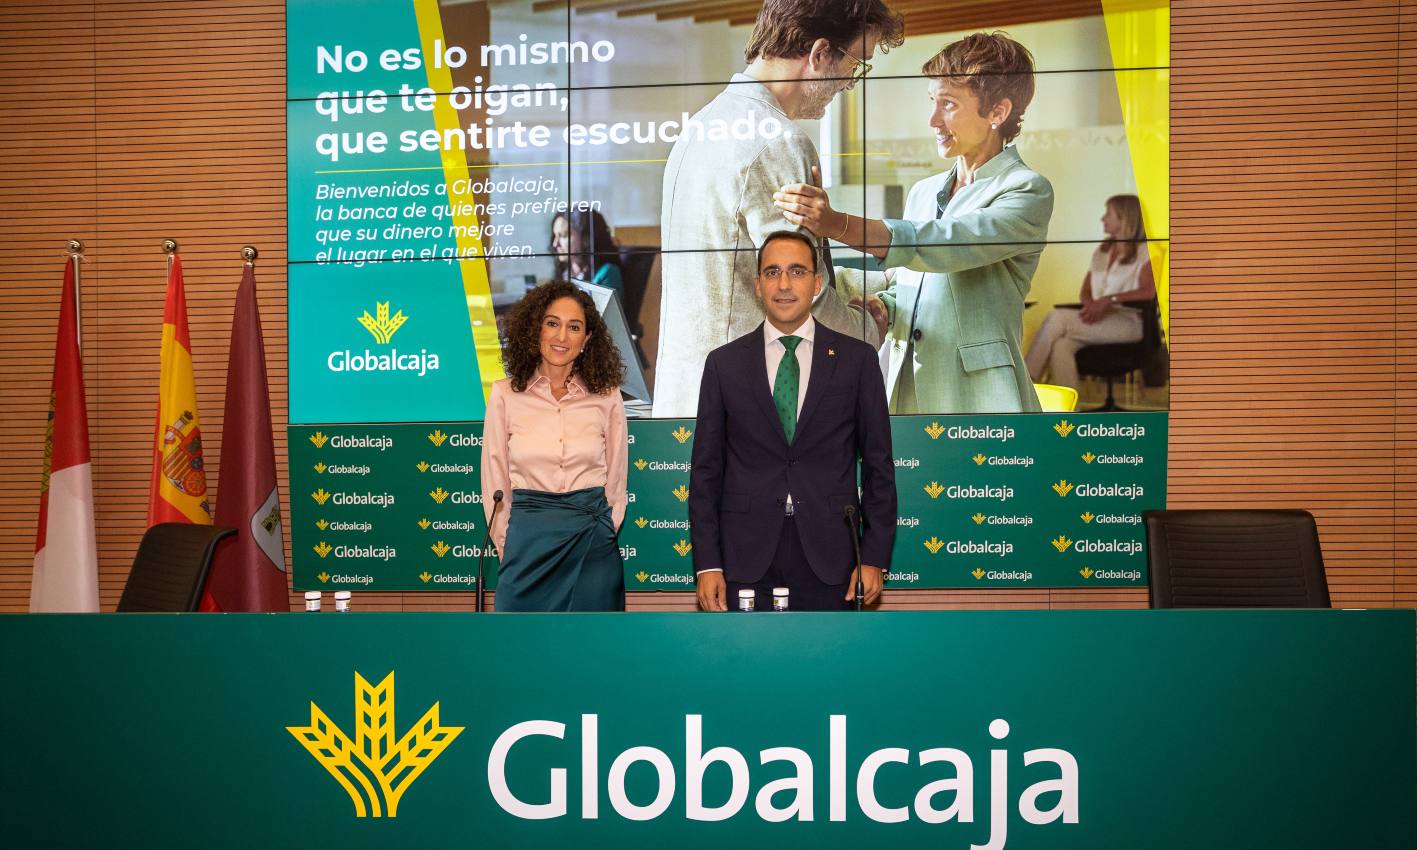 Globalcaja presenta en Albacete "No es lo mismo", su nueva campaña corporativa.